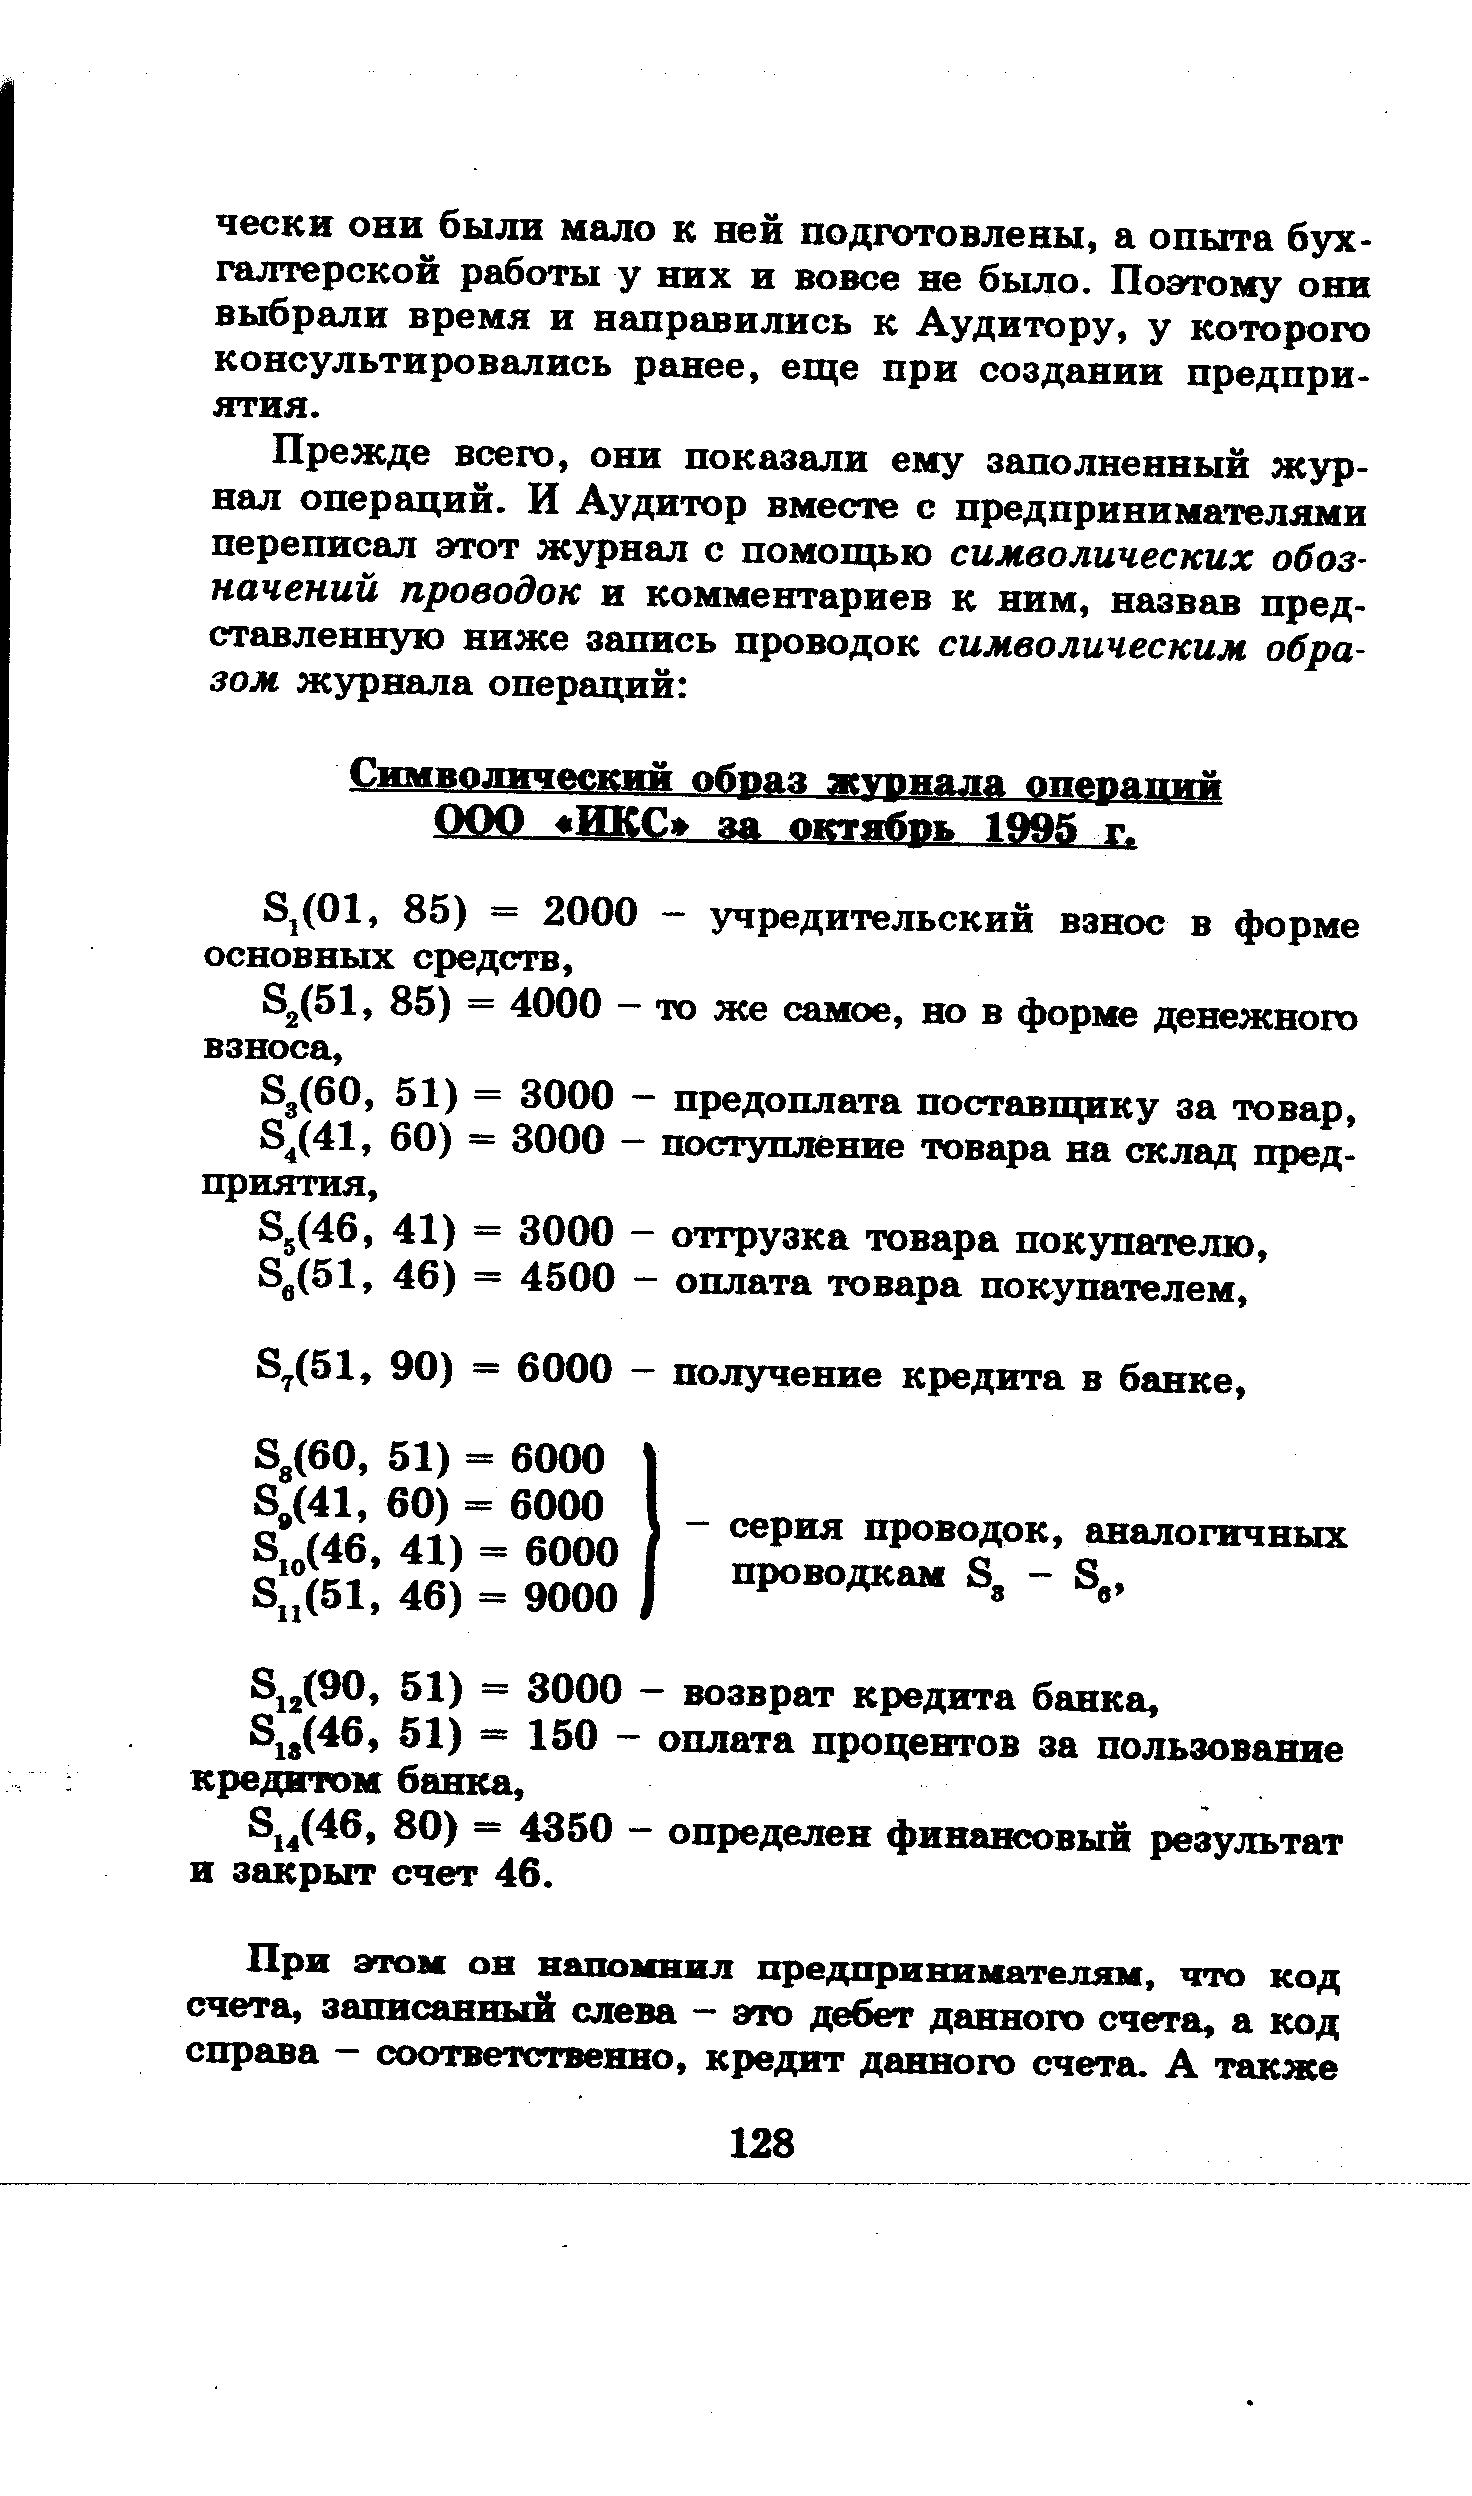 Символический образ журнала операций ООП ИЩ за октябрь 1995 г.
